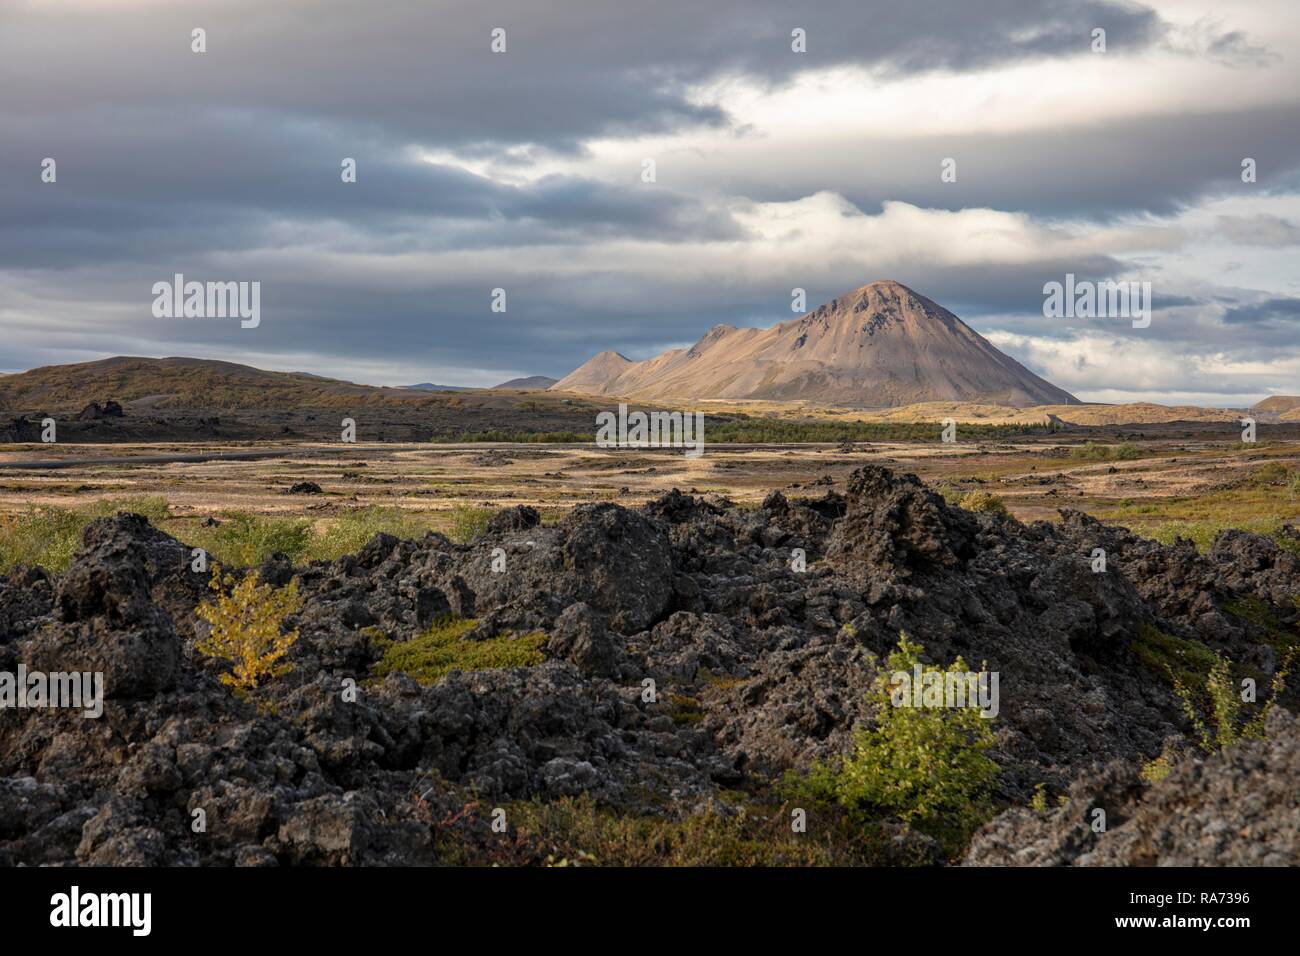 Mývatn, Krafla volcano system, Iceland Stock Photo